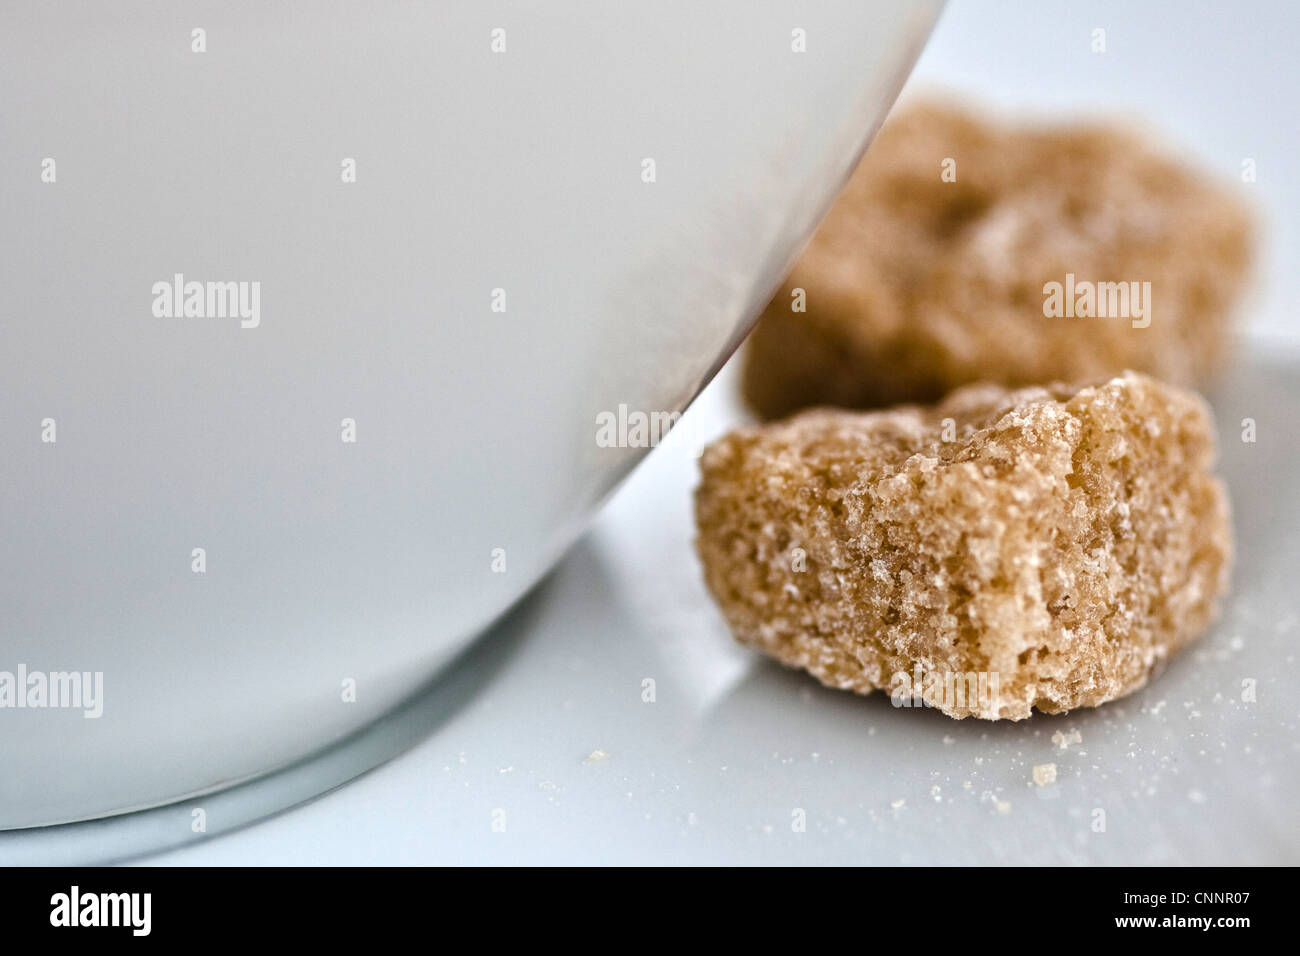 Immagine dello stile di vita di una tazza di caffè con due cubetti di zucchero di canna. Foto Stock